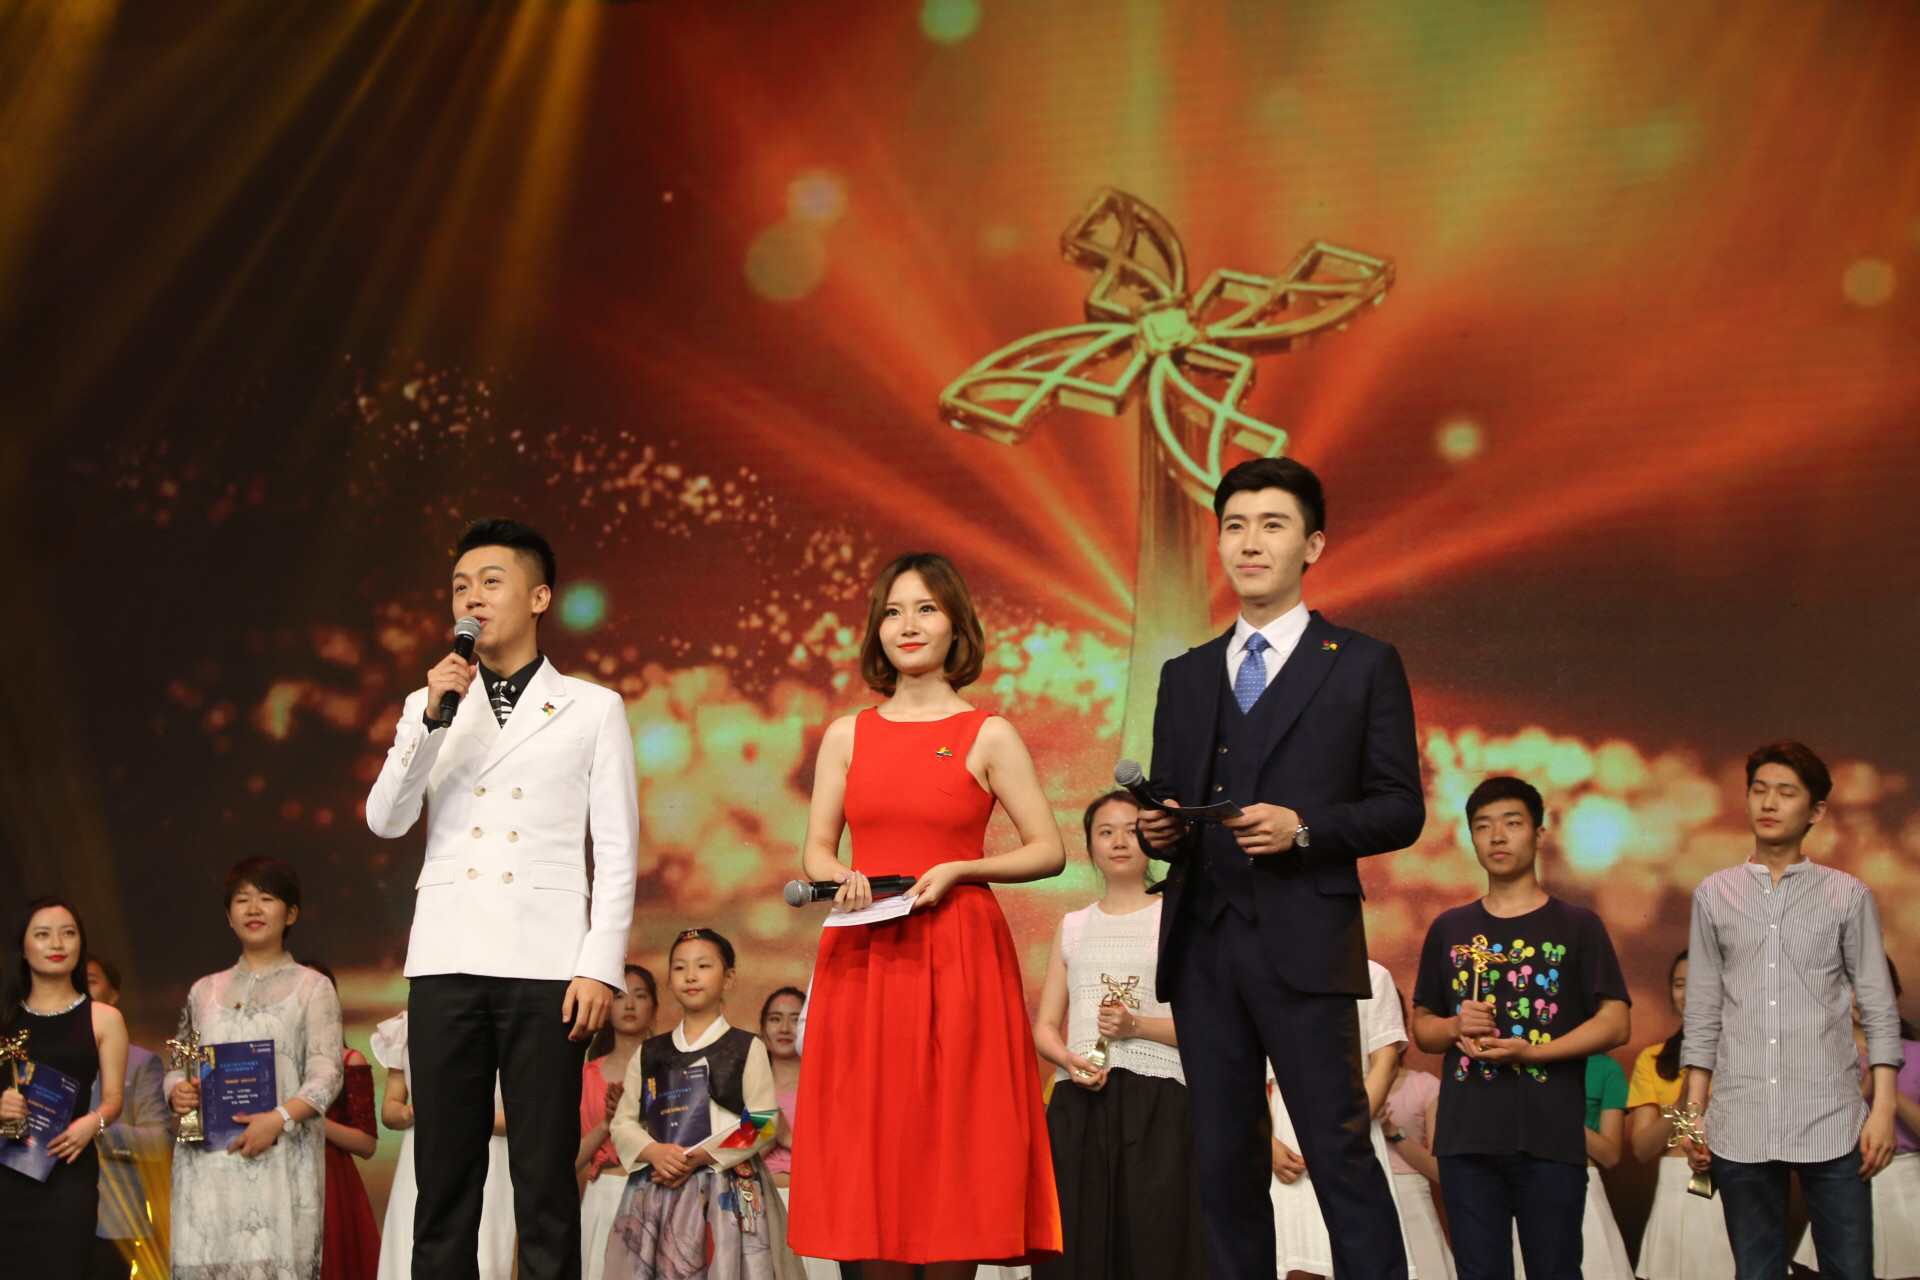 上海大學生電視節頒獎典禮